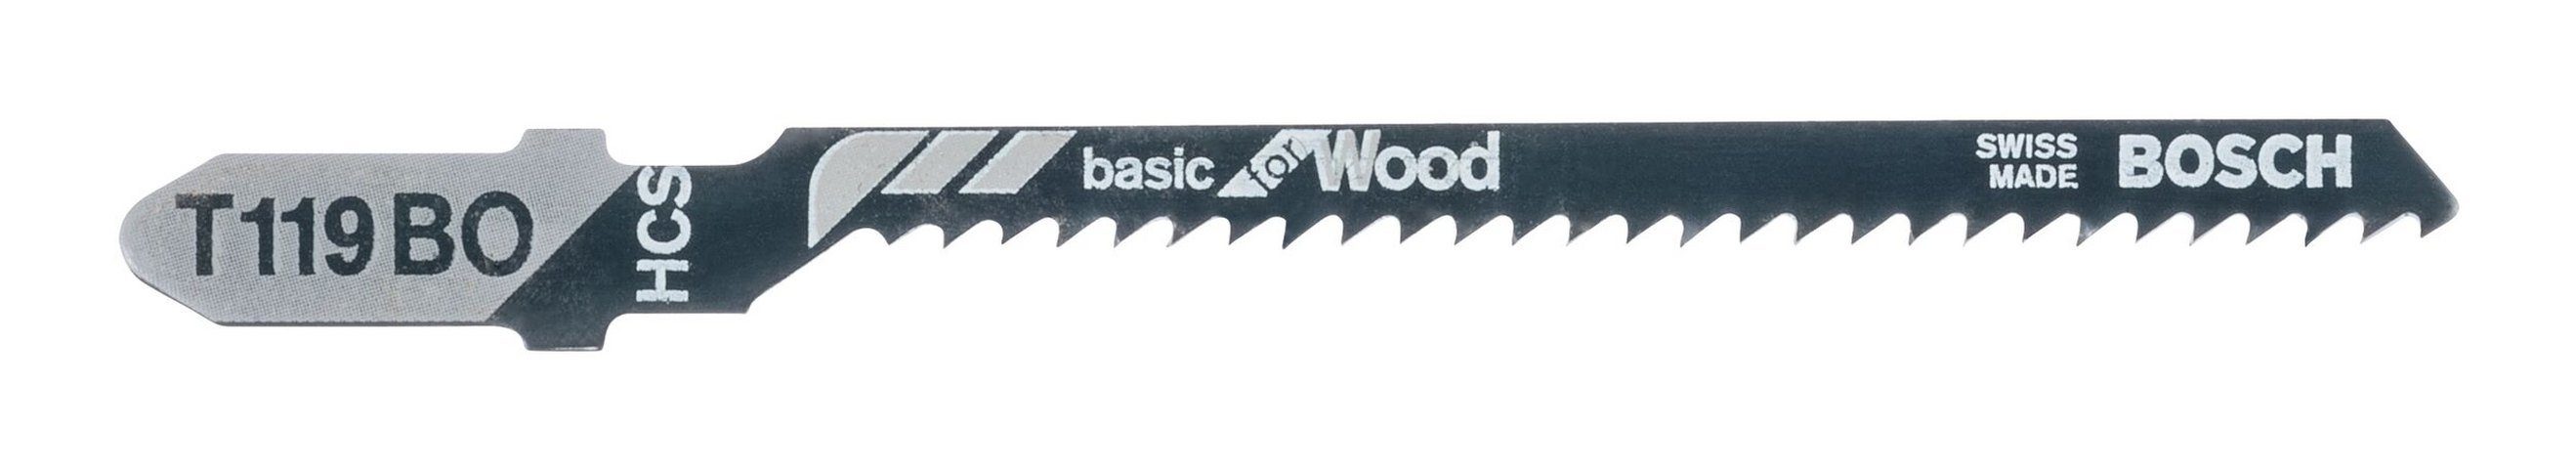 BOSCH Stichsägeblatt Basic T - Stück), Wood BO for 3er-Pack (3 119